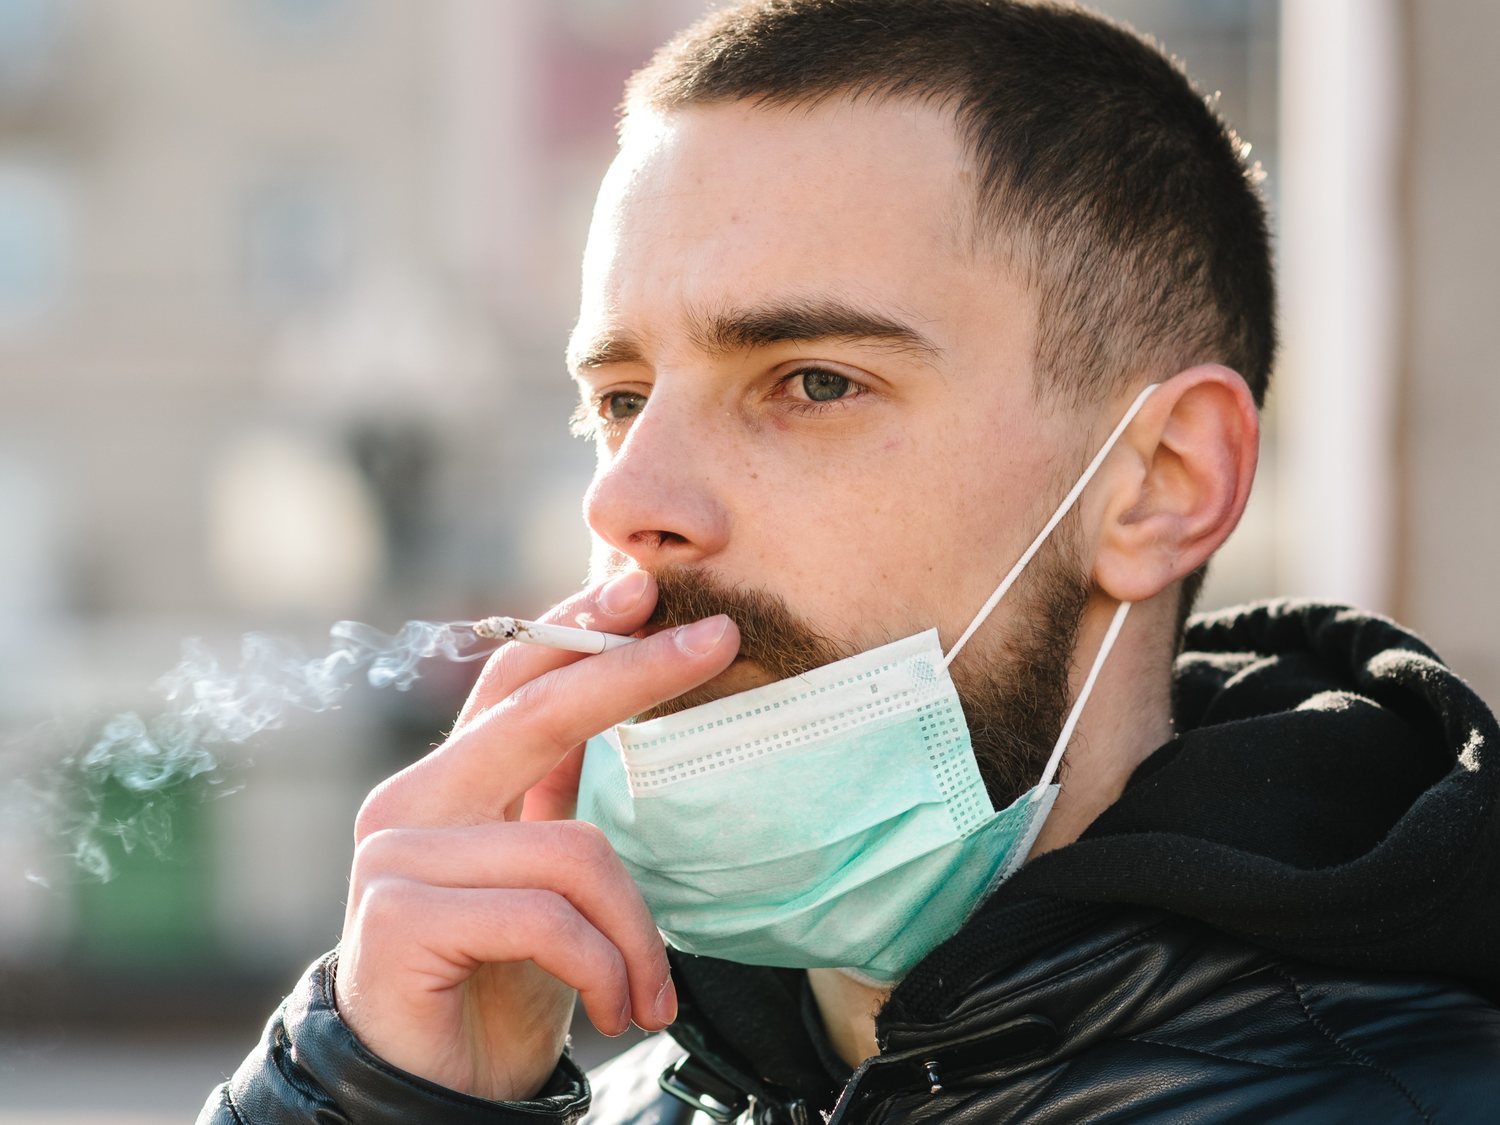 Investigadores españoles creen que la nicotina podría frenar el coronavirus